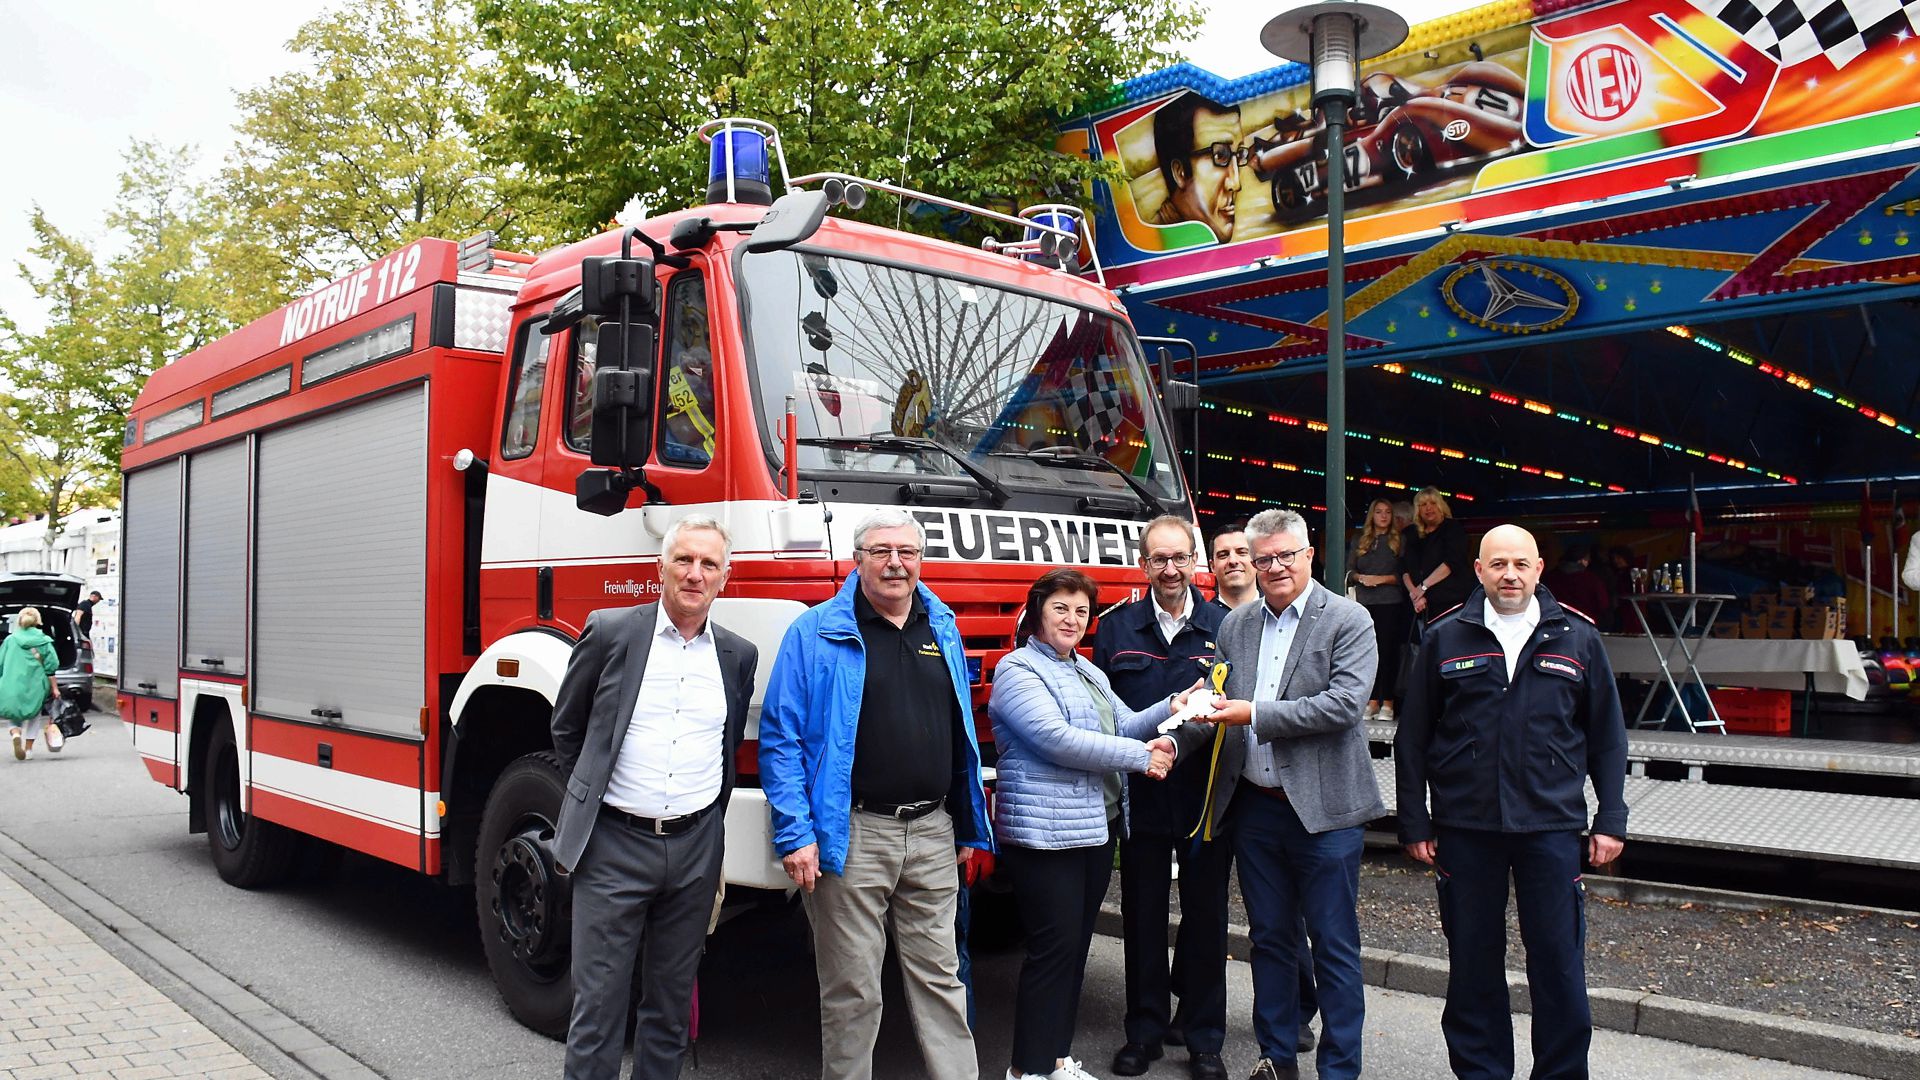 Geschenk für Freunde: Bei einem Frühstück zum Zwetschgenfest in Bühl wurde das Feuerwehrauto für Kalarasch in der Republik Moldawien übergeben.